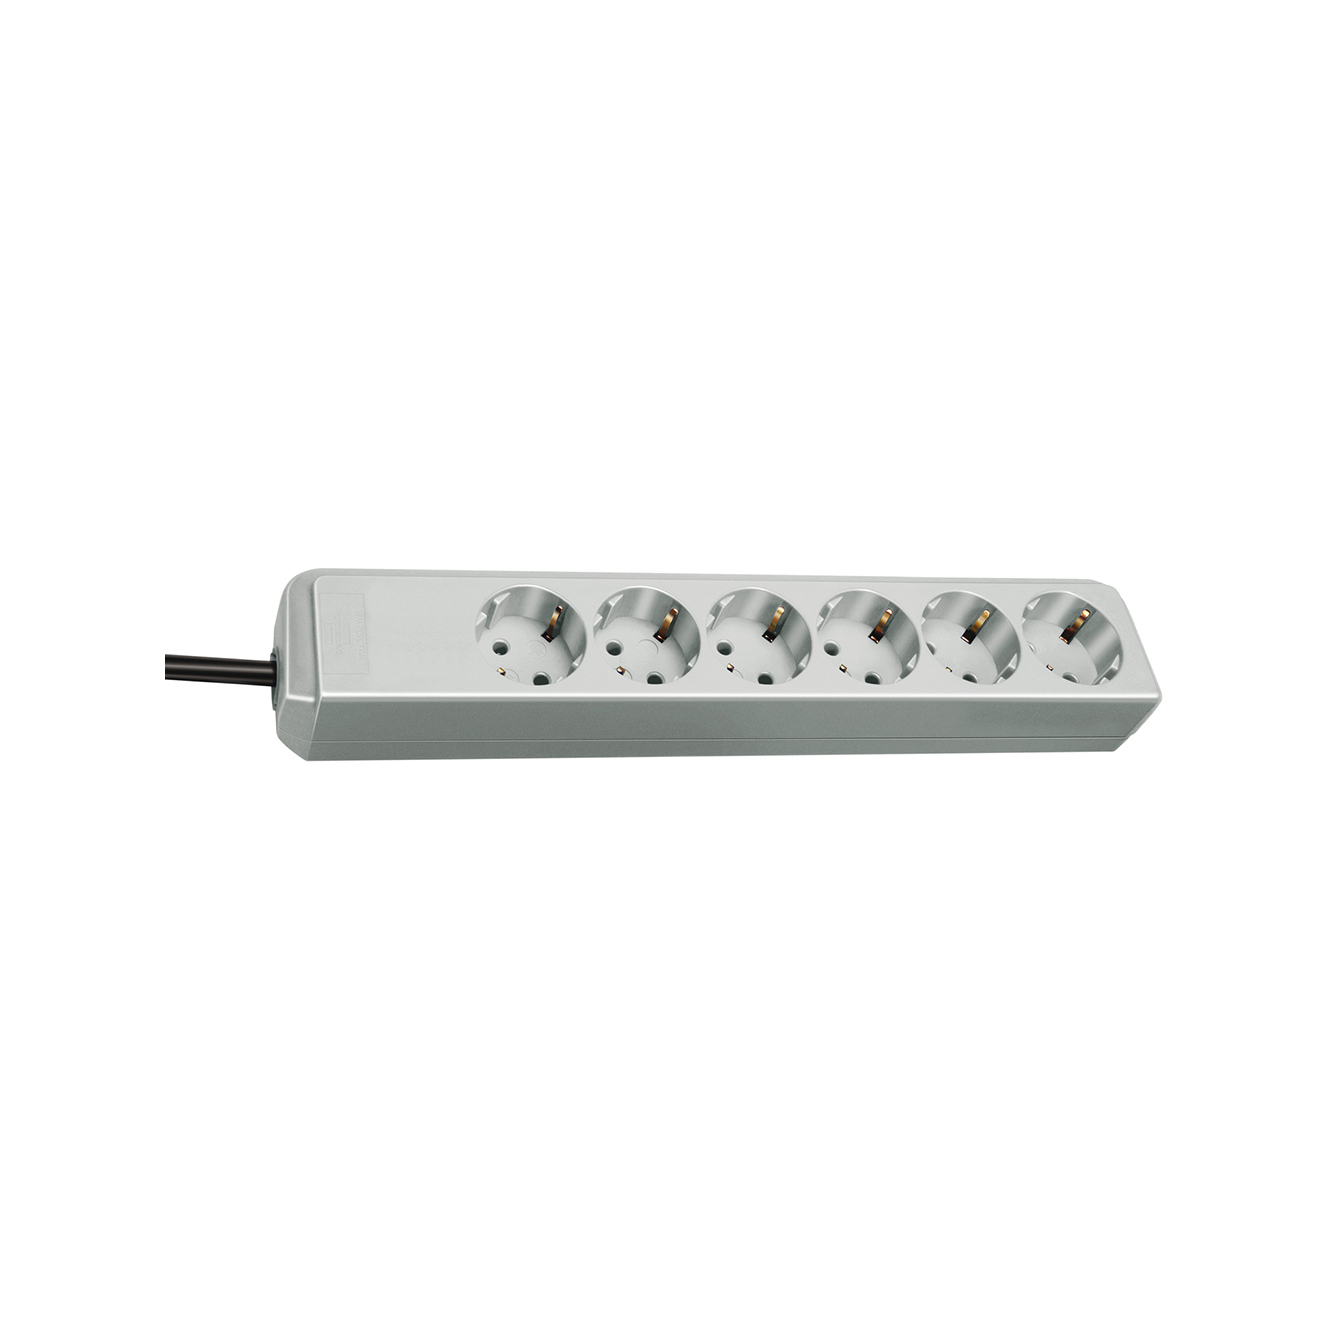 Удлинитель Brennenstuhl Eco-Line 6 розеток кабель 1,5 м H05VV-F 3G1,5 светло-серый 1159450015